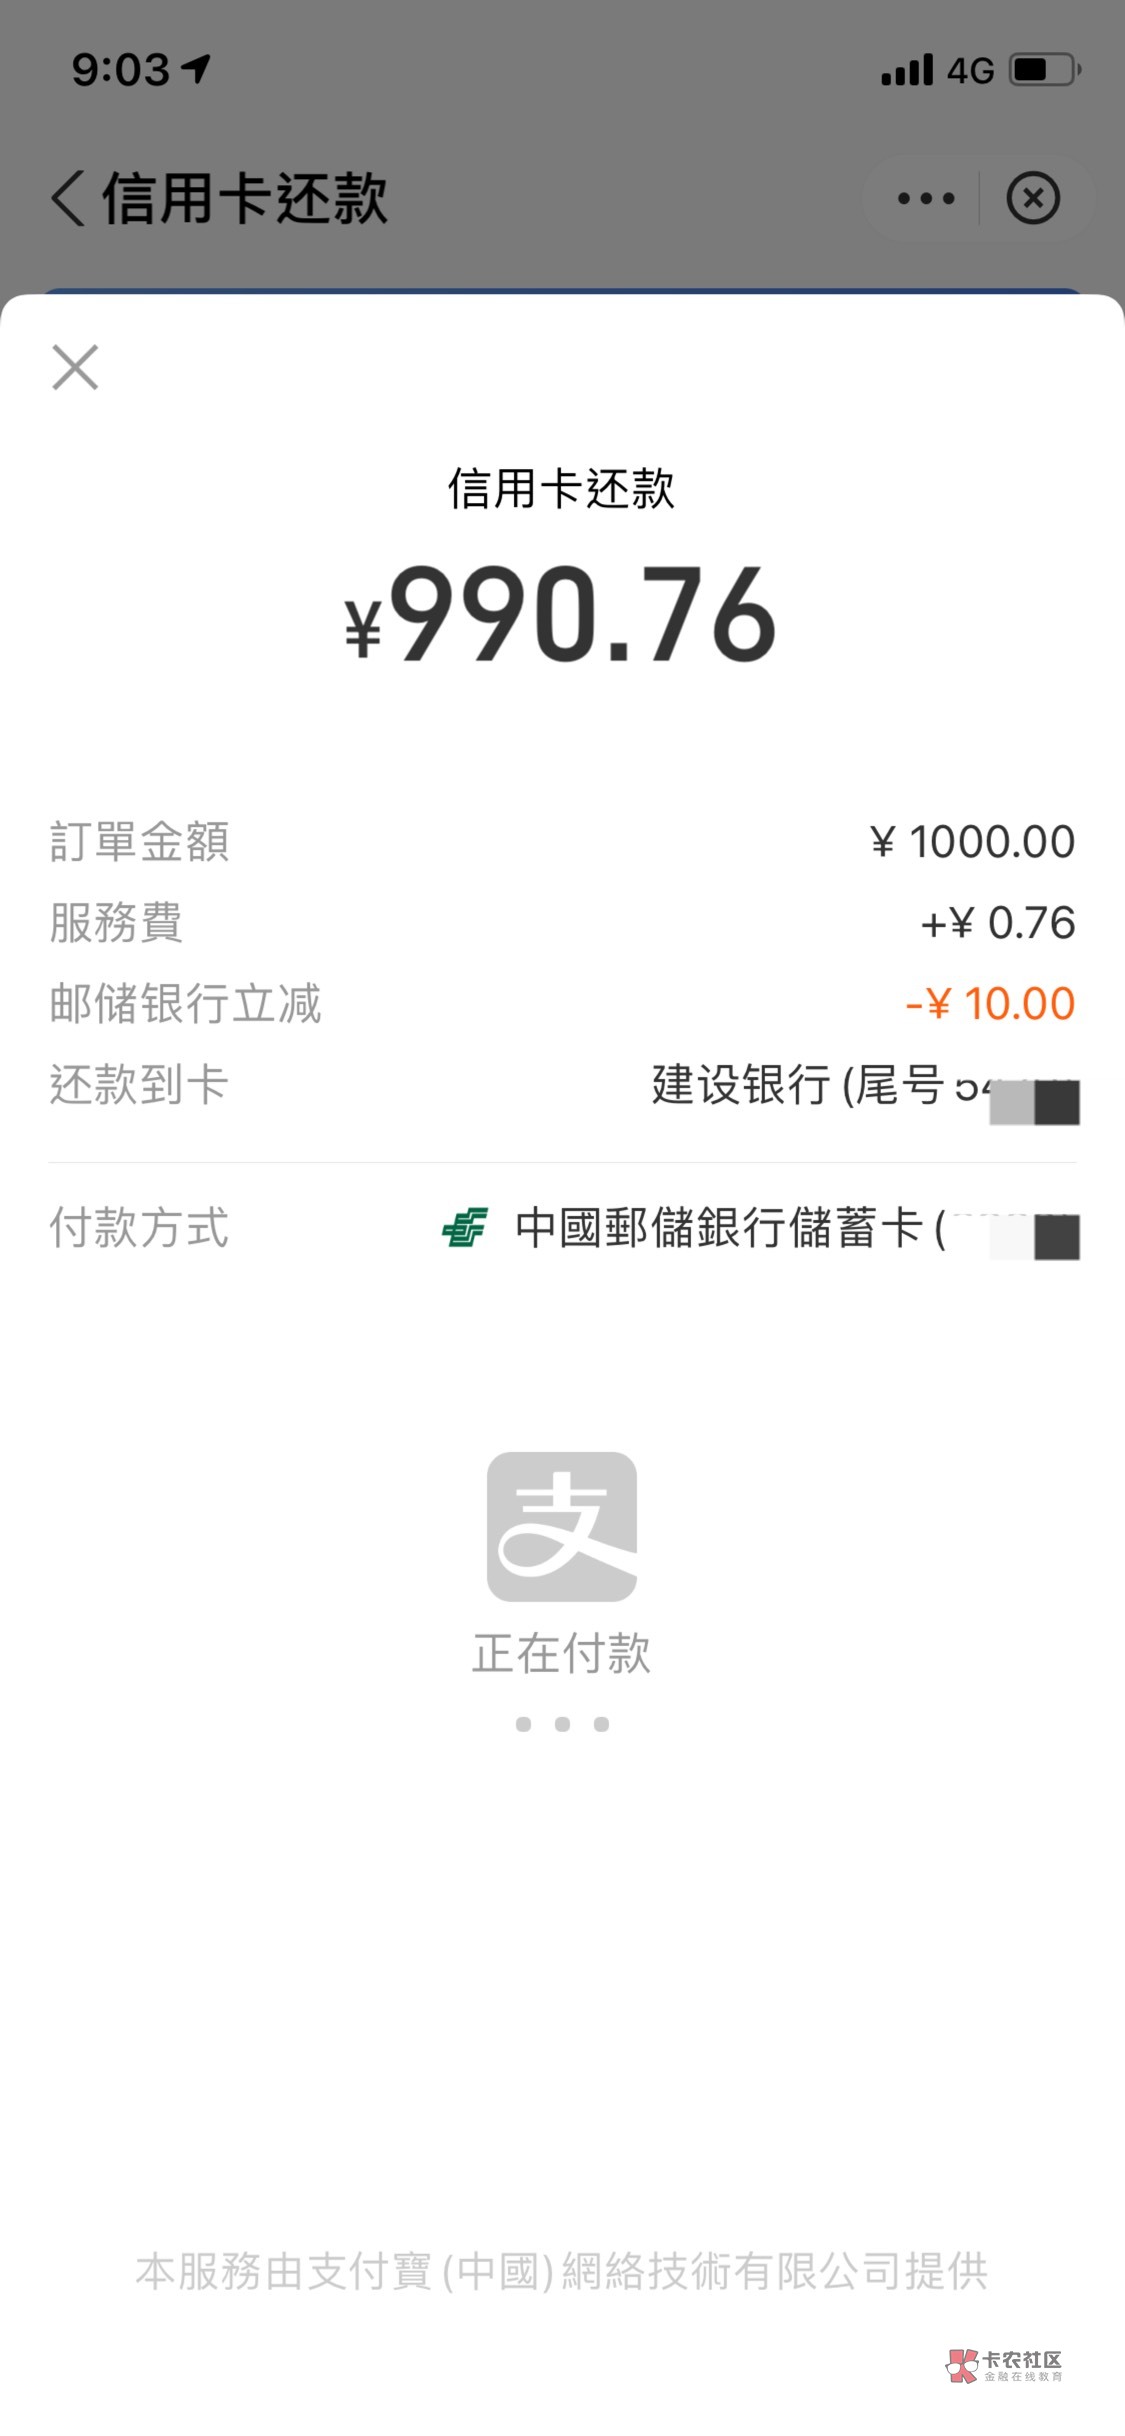 重庆邮储支付宝还xyk1000-10

9 / 作者:。L。 / 